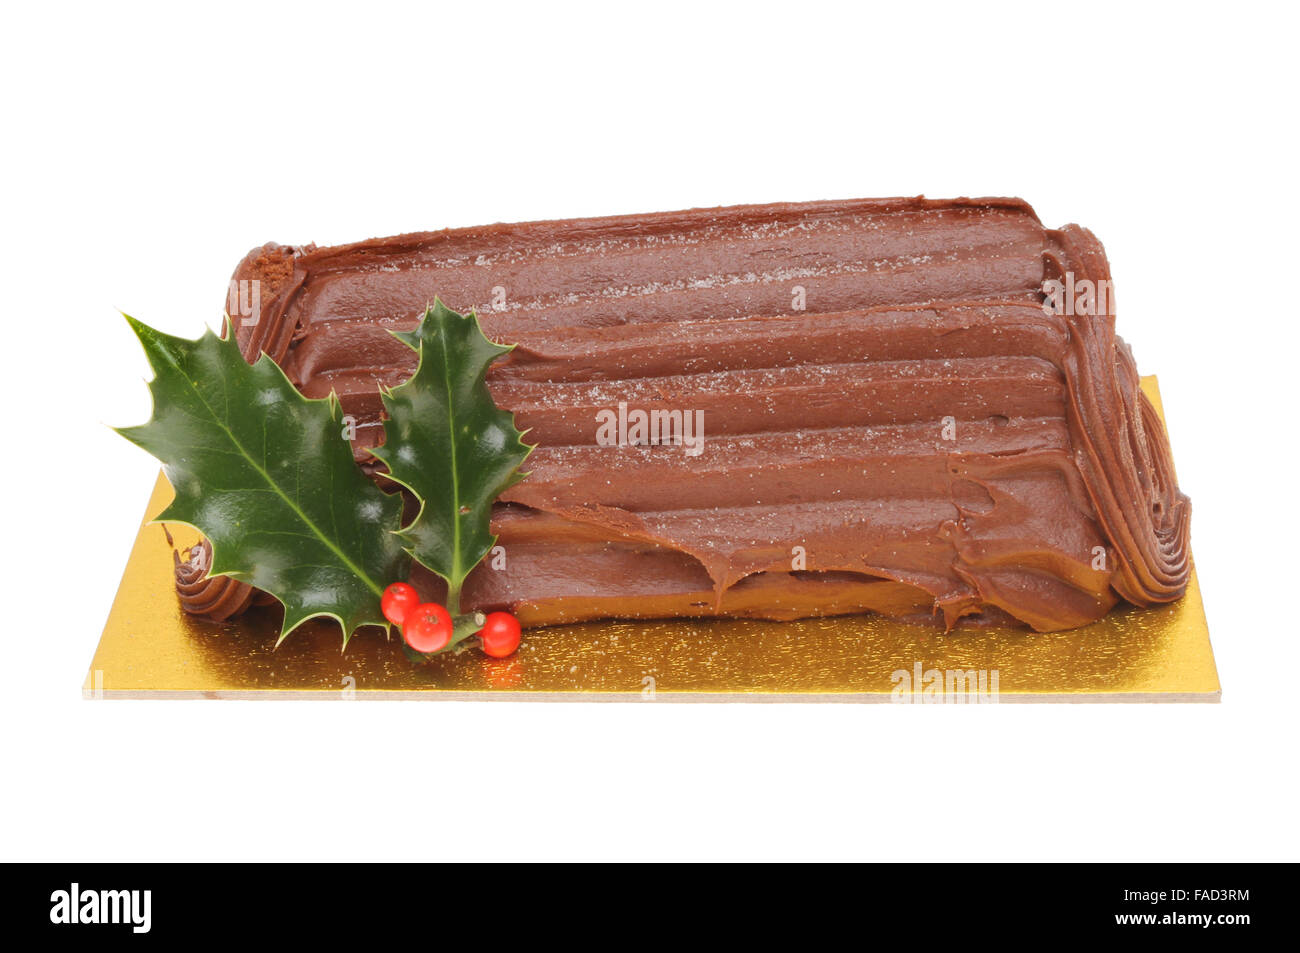 Bûche au chocolat décoré d'une branche de houx isolés contre white Banque D'Images